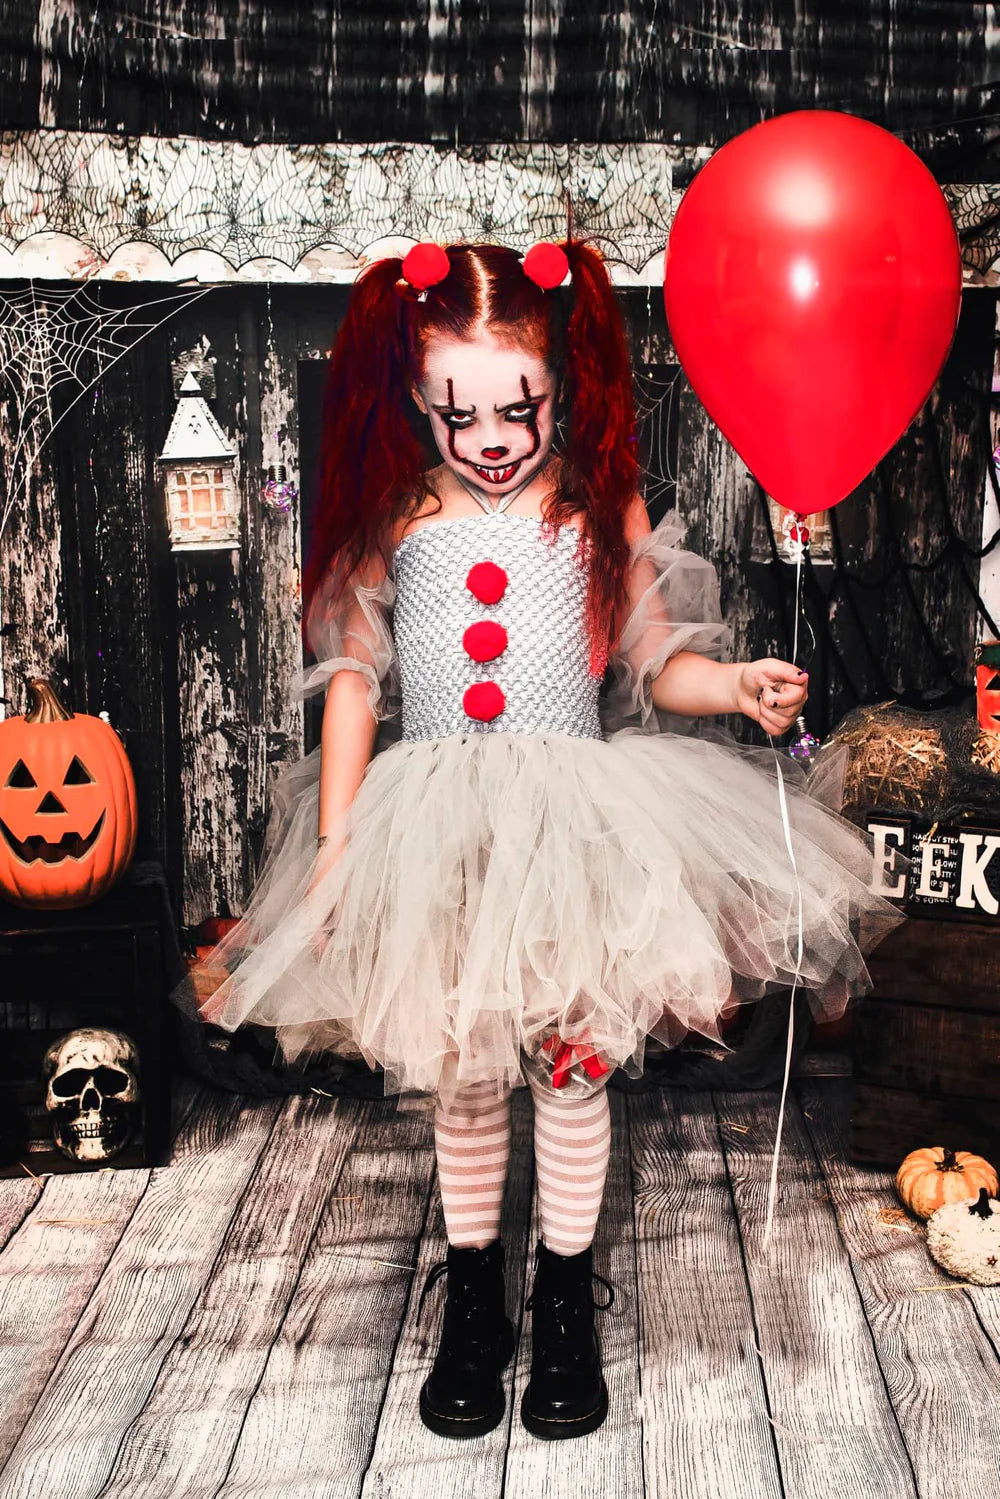 Kate Gespenstische Halloween Scheune Hintergrund von Mandy Ringe Photography